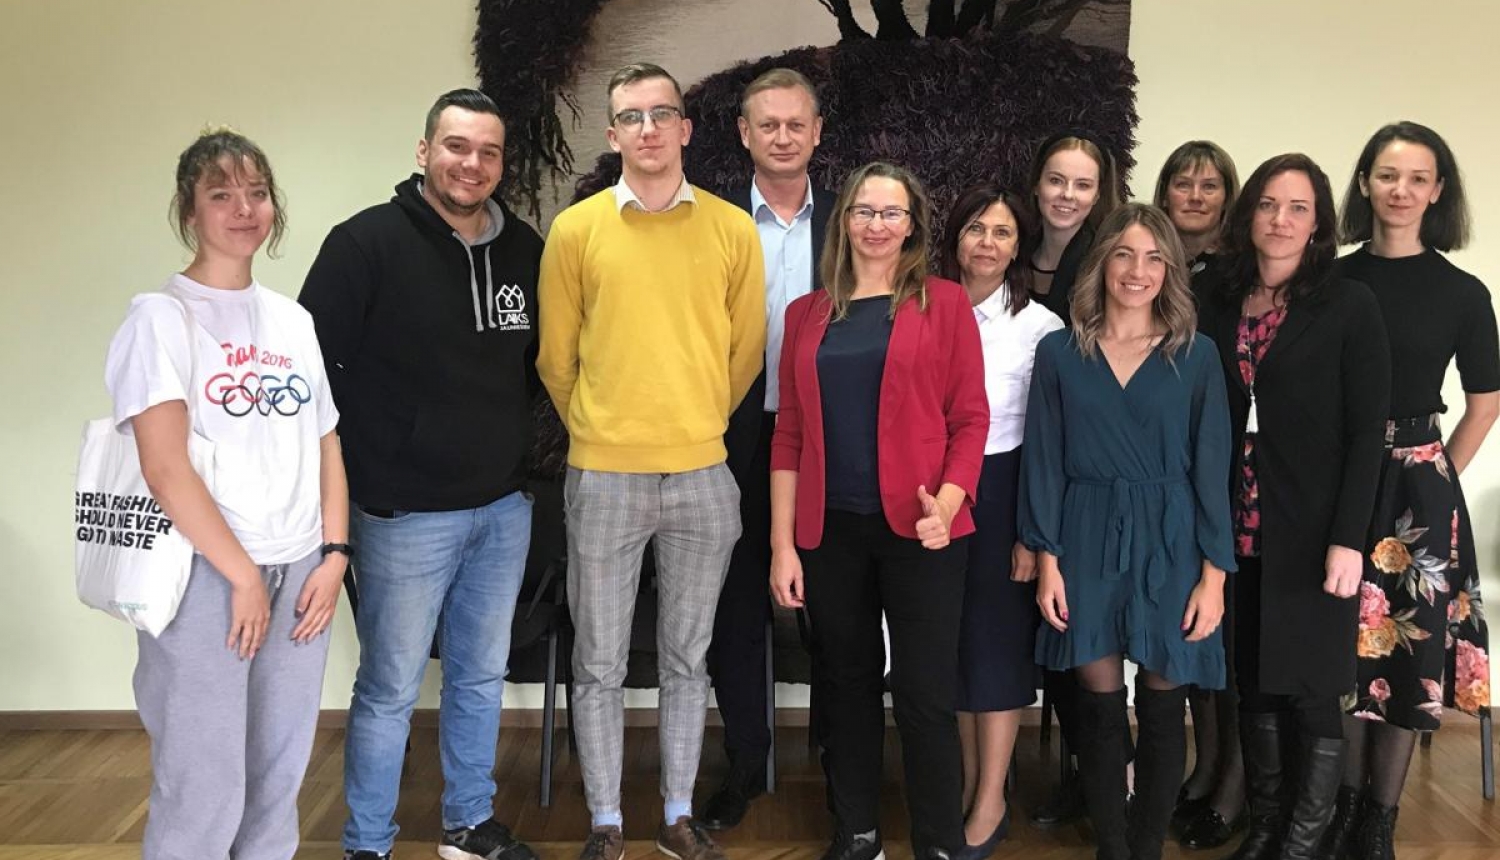 LJP kopā ar Izglītības un zinātnes ministriju tikās ar Bauskas novada pašvaldību sarunā par darba ar jaunatni situāciju novadā